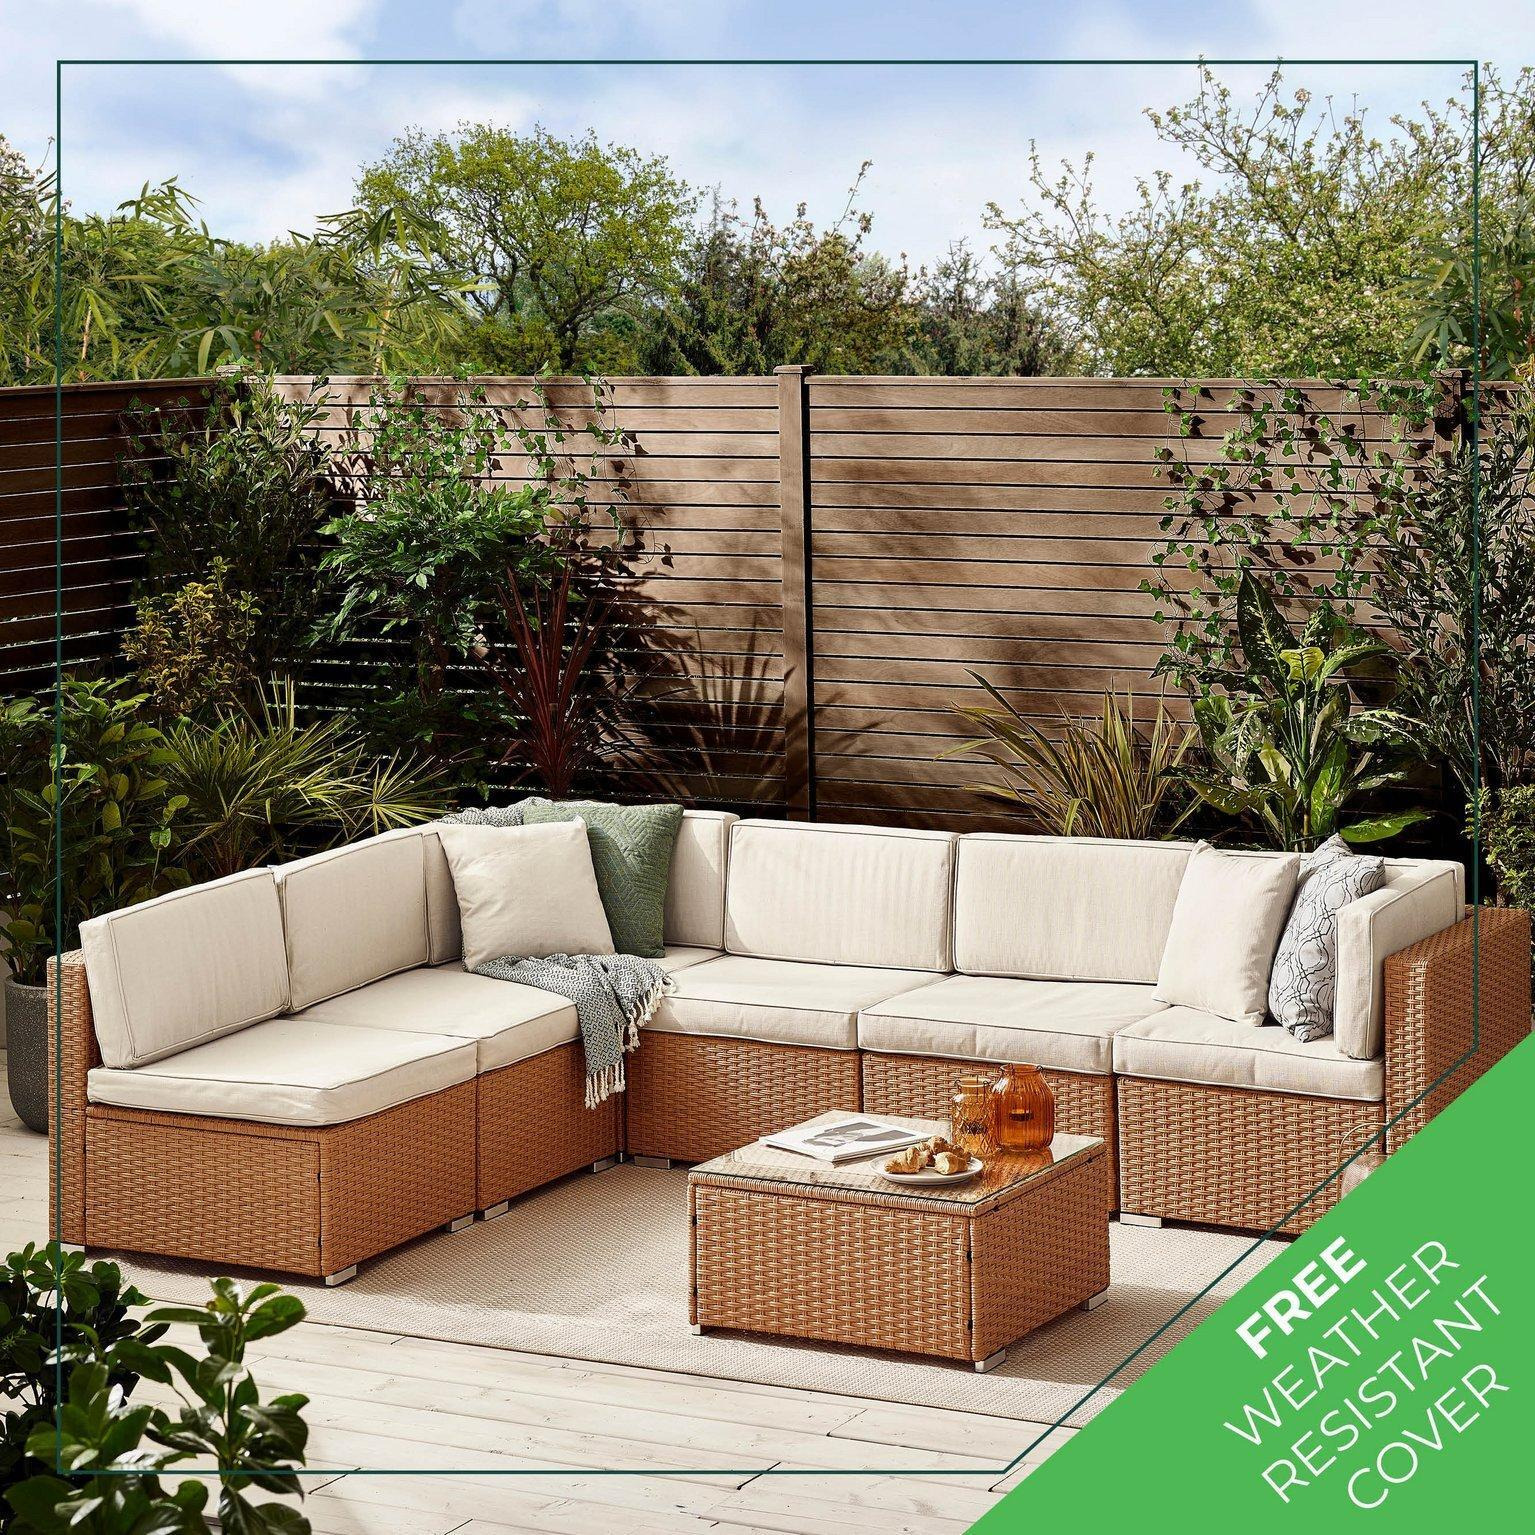 Orlando 6 Seat Modular Outdoor Garden Sofa - Rattan Garden Sofa with Thick Cushions - Garden Coffee Table - image 1